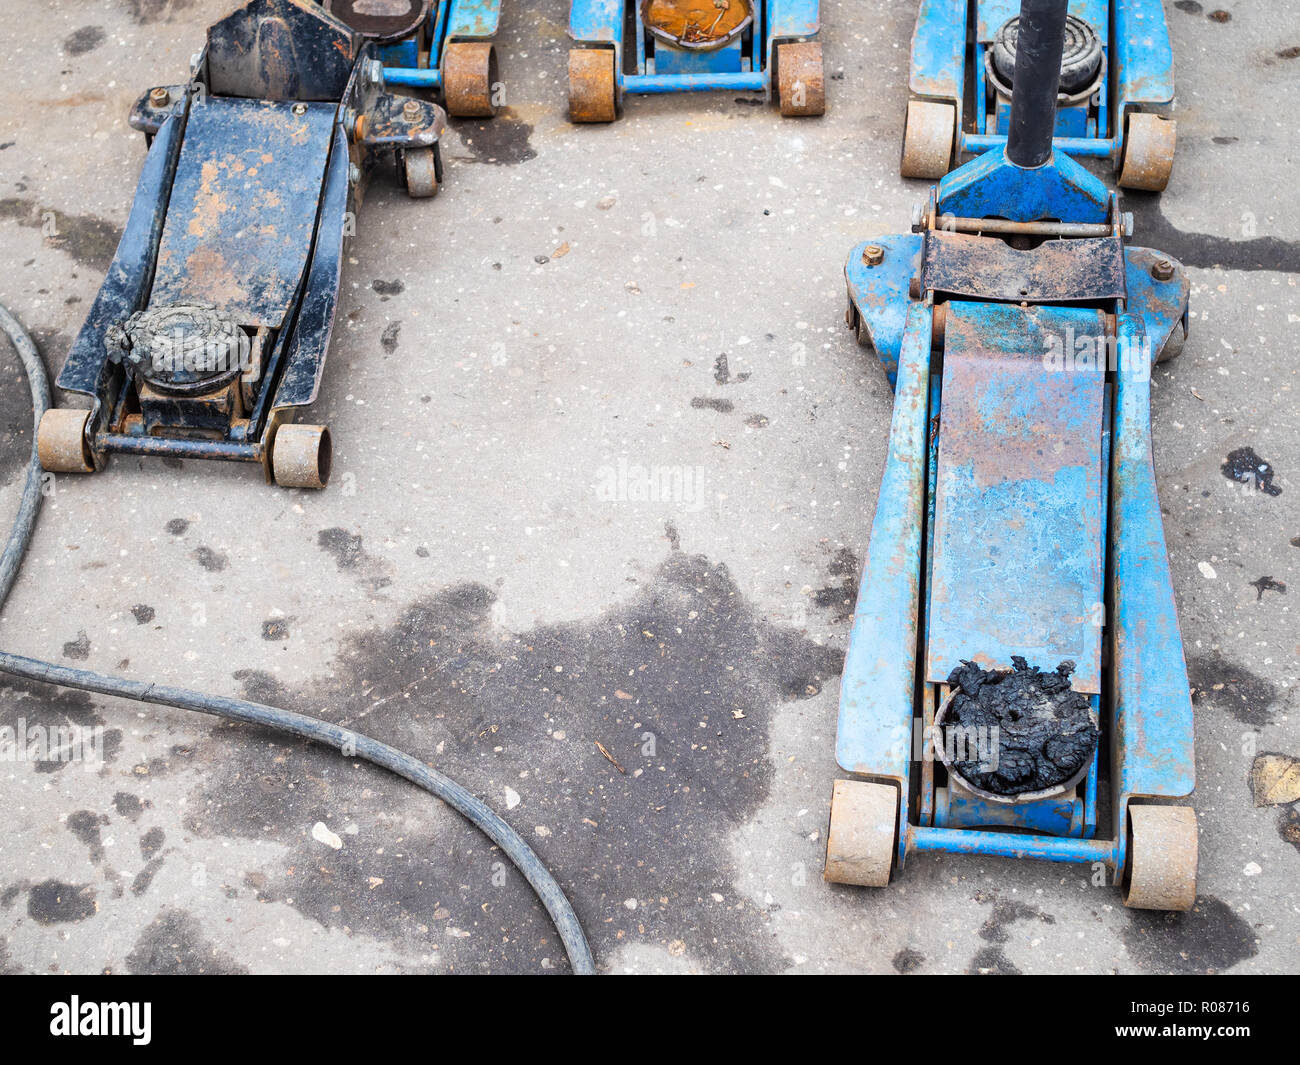 Paar alte hydraulische Wagenheber für den Austausch der Reifen auf dem  Boden der freien Autowerkstatt Stockfotografie - Alamy